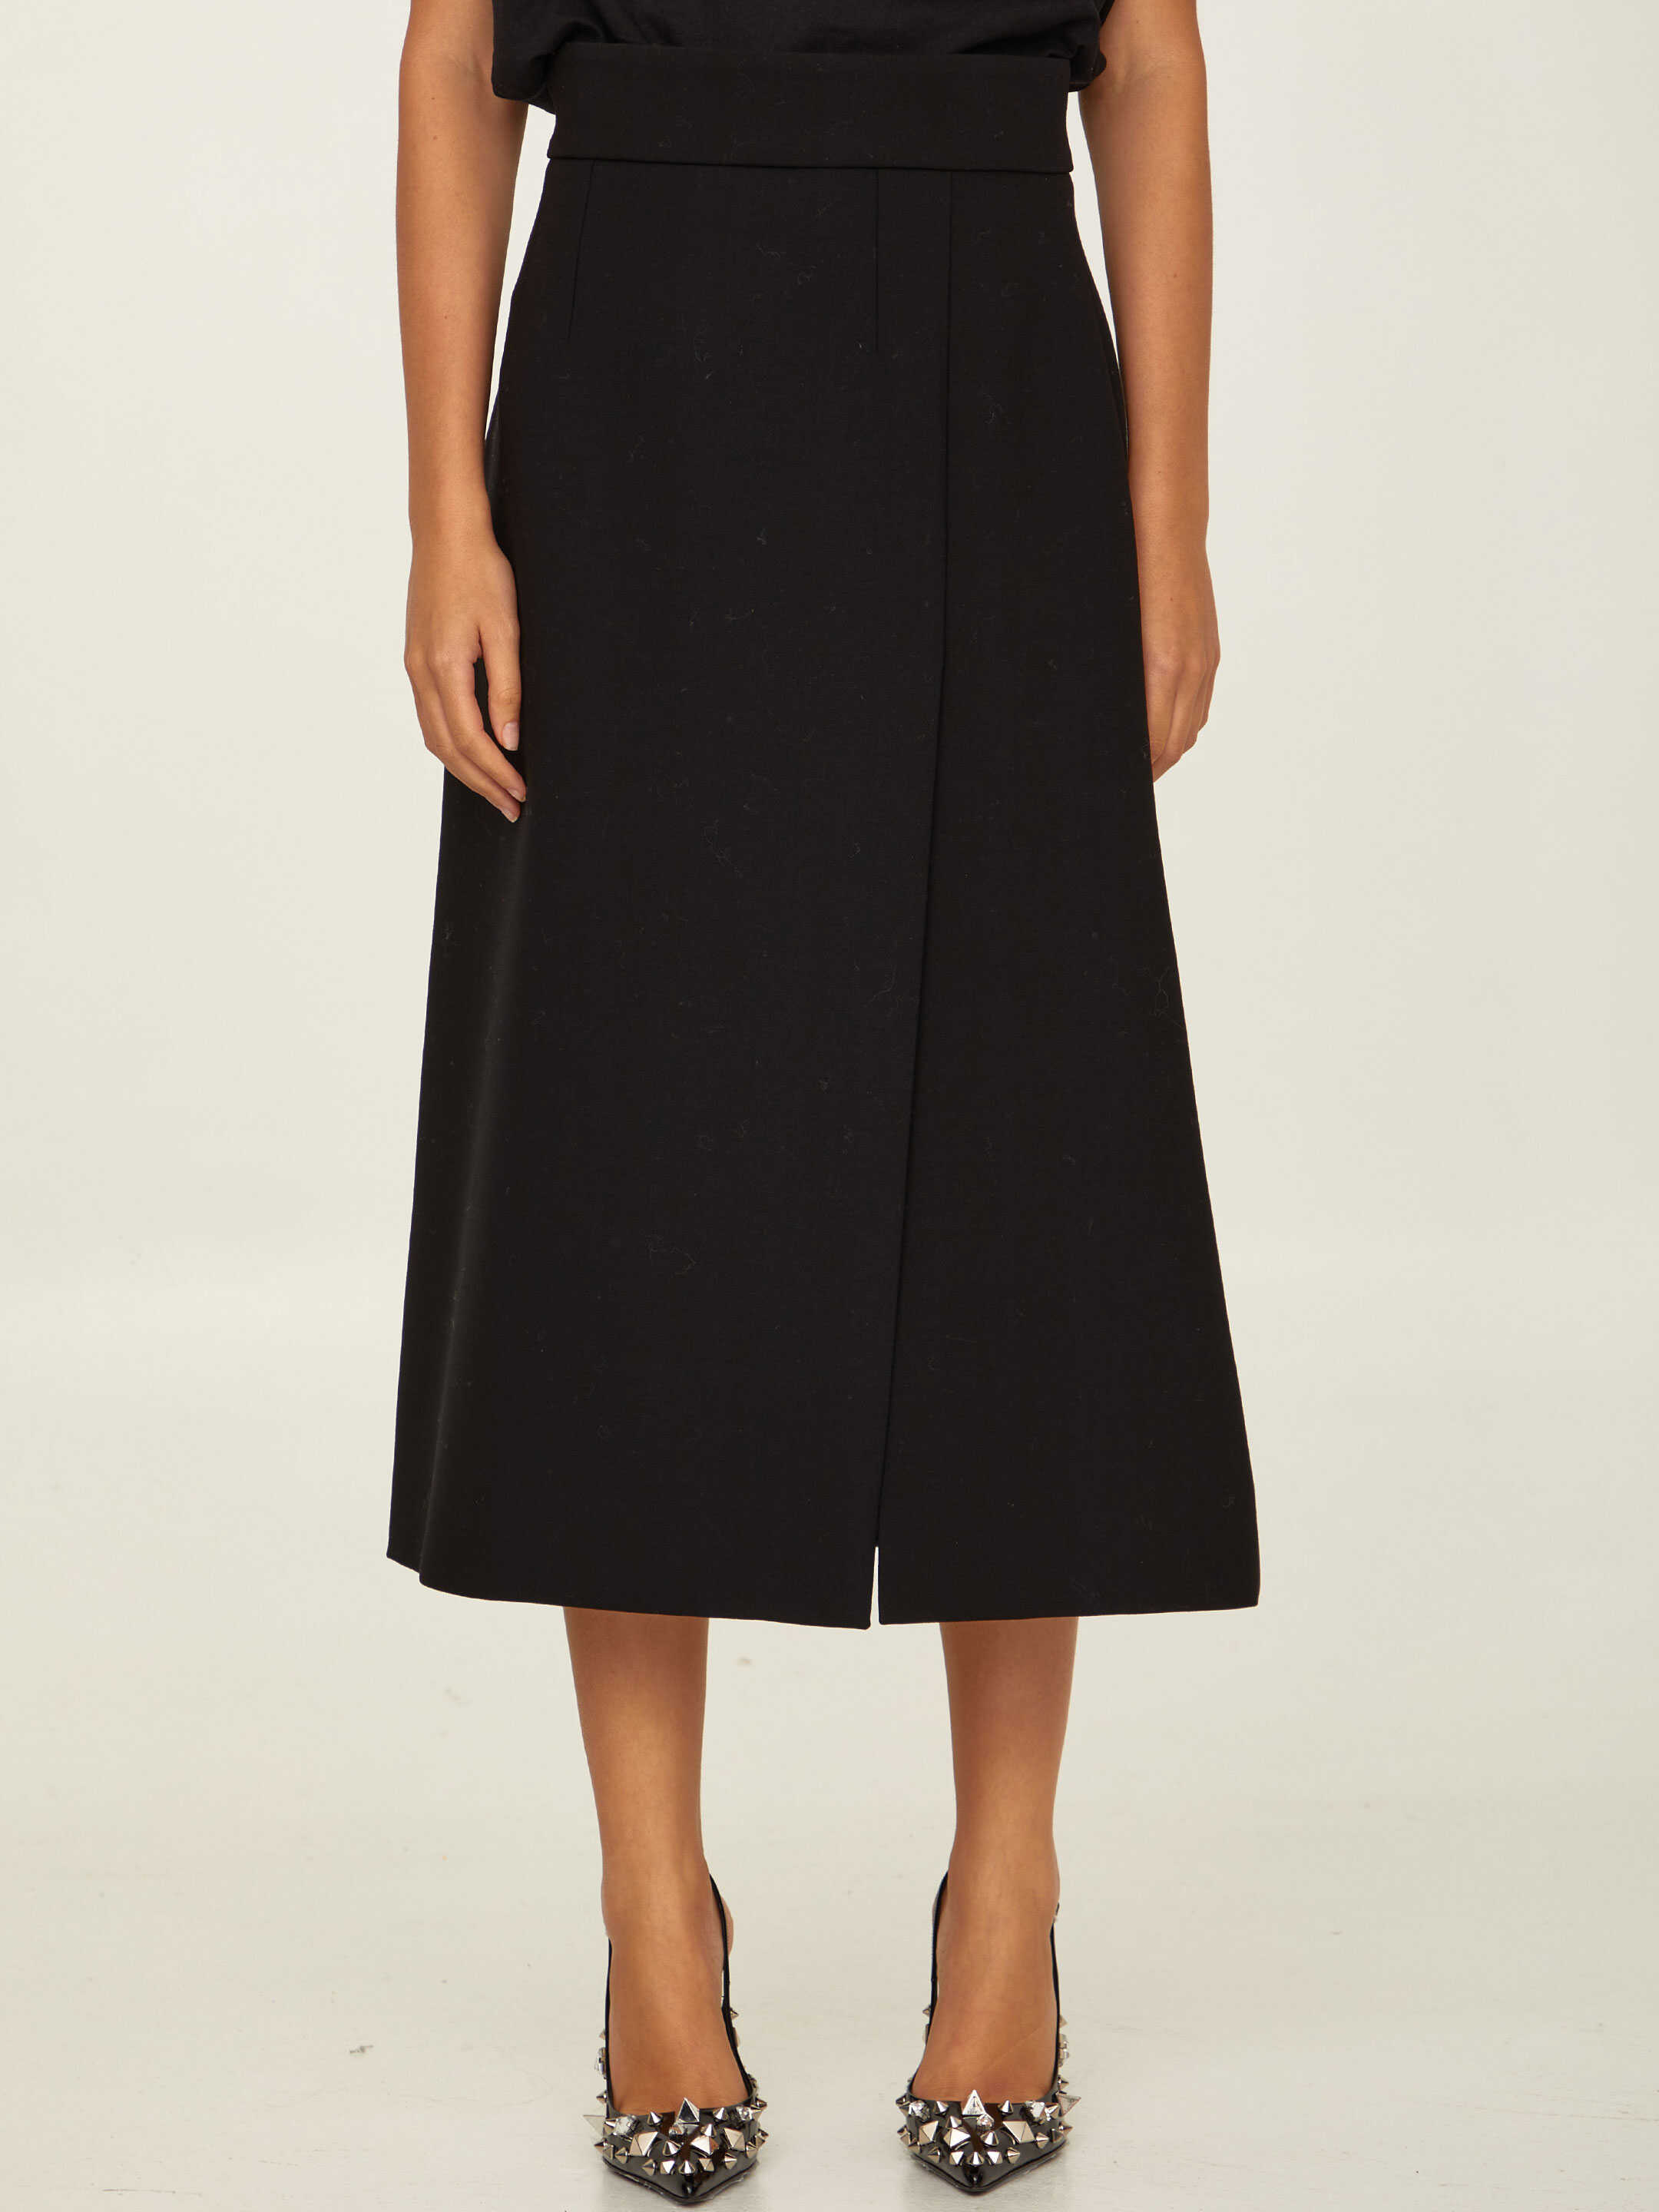 Dolce & Gabbana Stretch Jersey Skirt Black image